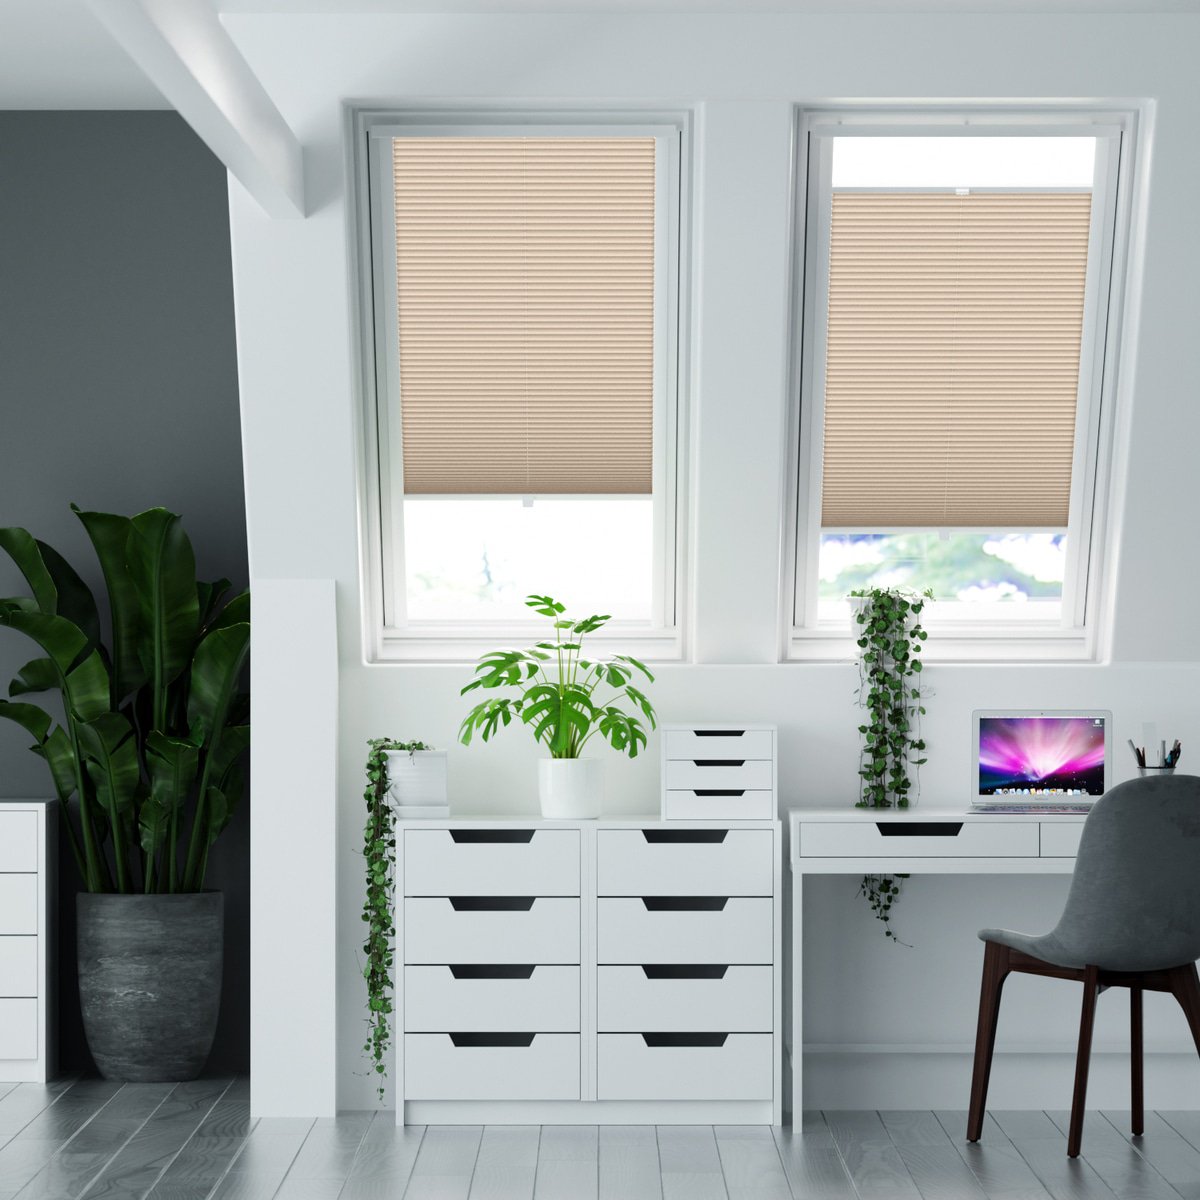 100% blickdichtes Plissee nach Maß mit Struktur, leicht glänzend,  'Reflect'-Rückseite - Creme-Weiß | Sonnenschutz für Fenster nach Maß -  Online-Shop